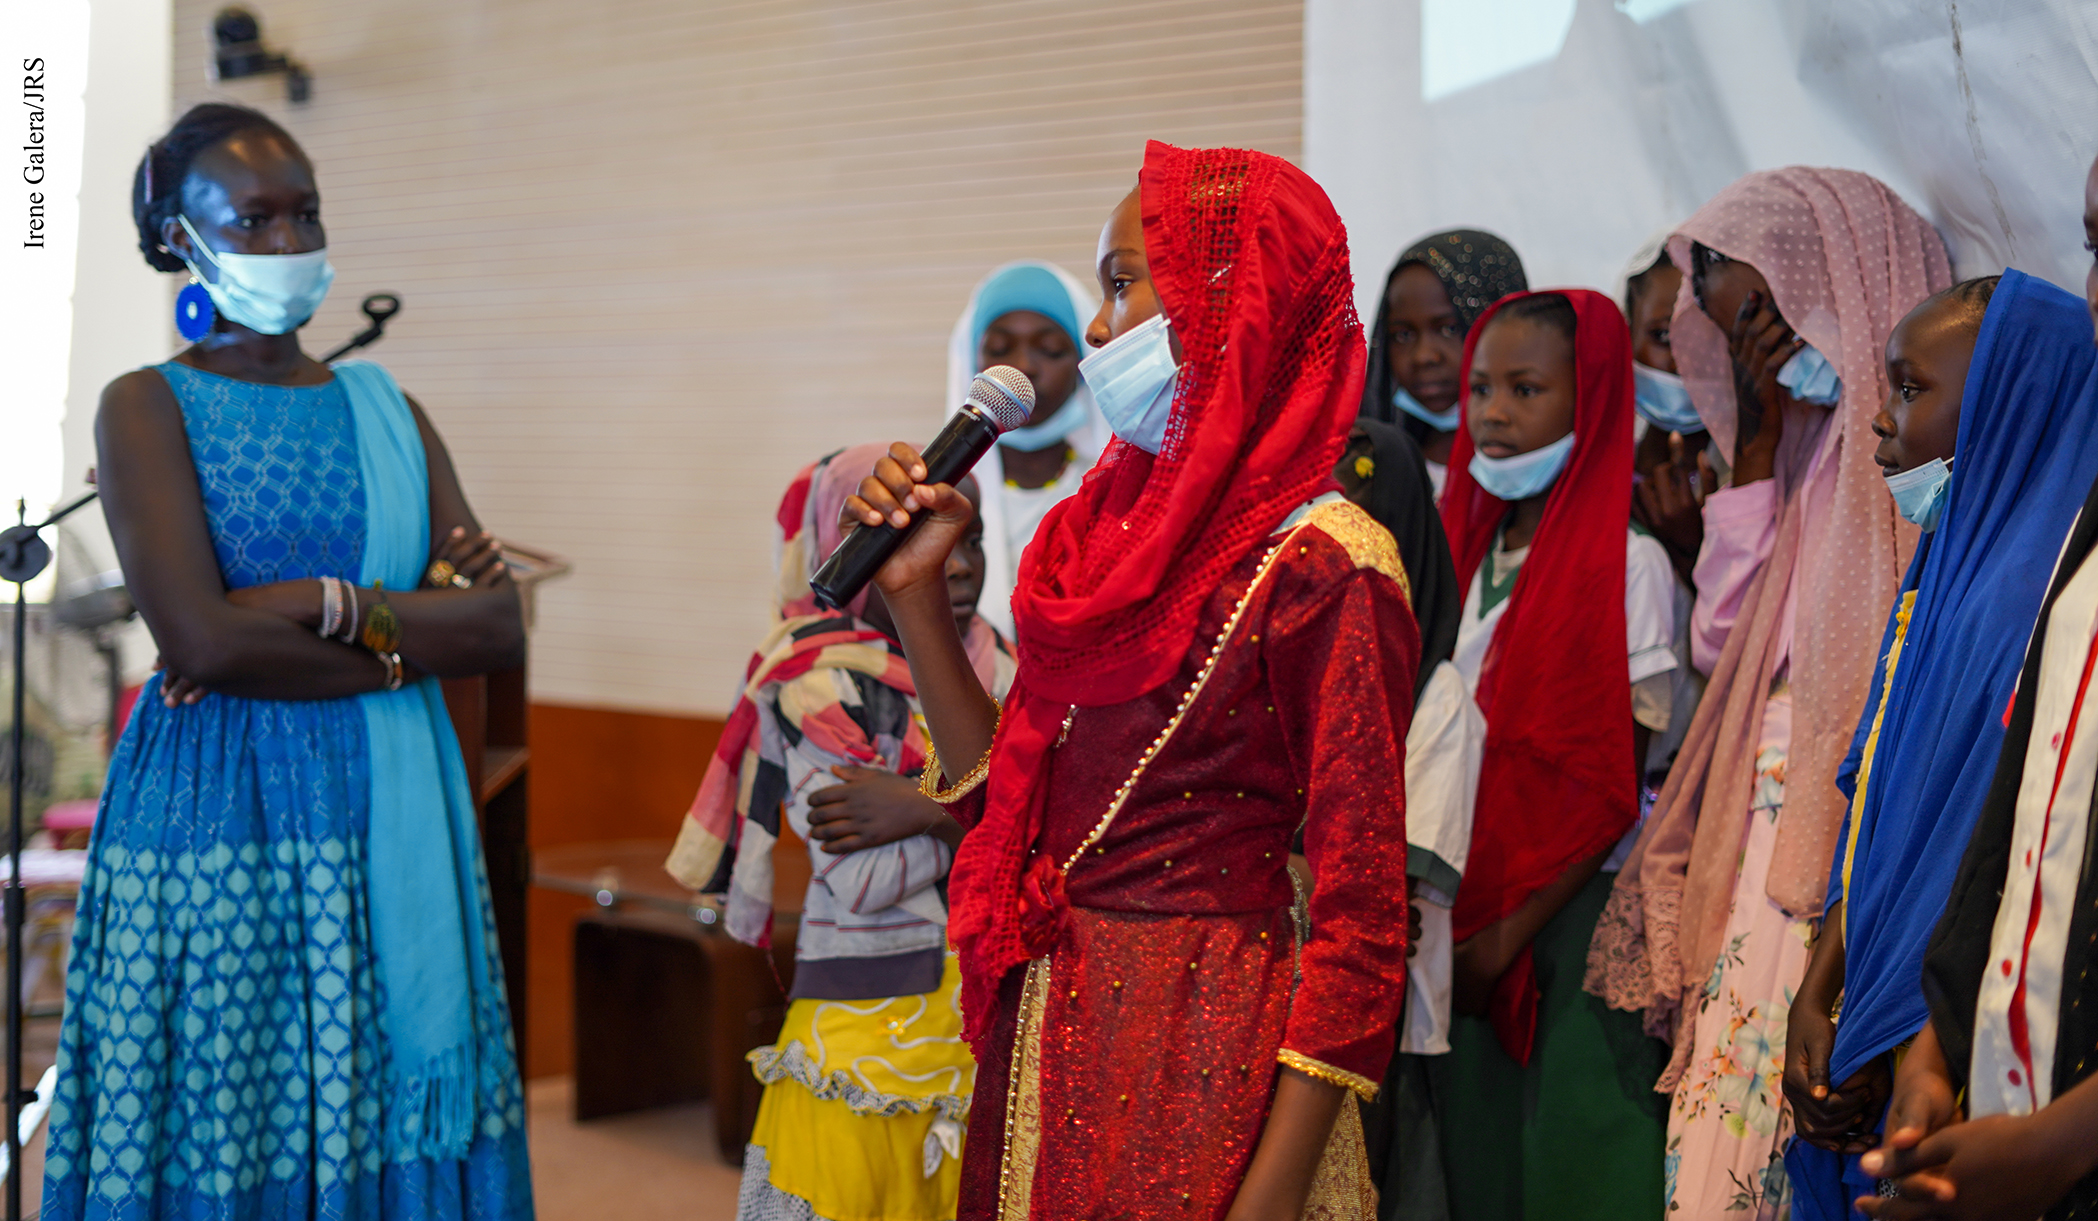 Tchad Culture: "Afaf et l'oeuf doré", un livre qui donne la parole aux filles réfugiées